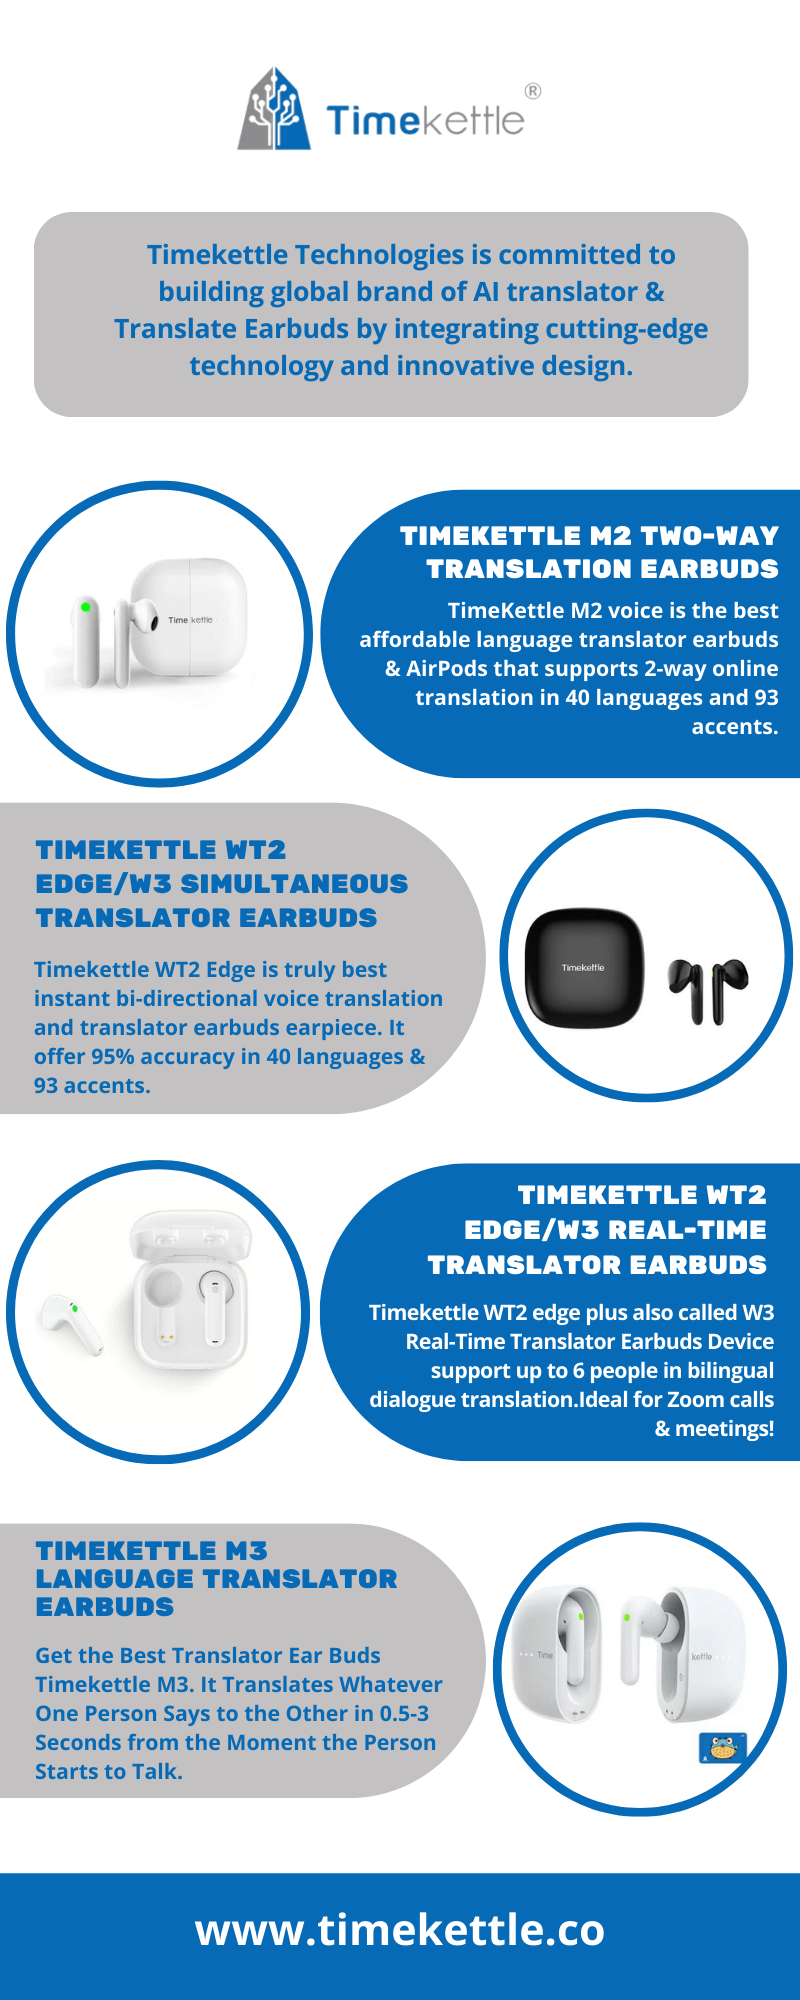 Timekettle WT2 Edge /W3 Real-TimeTranslator Earbuds Device